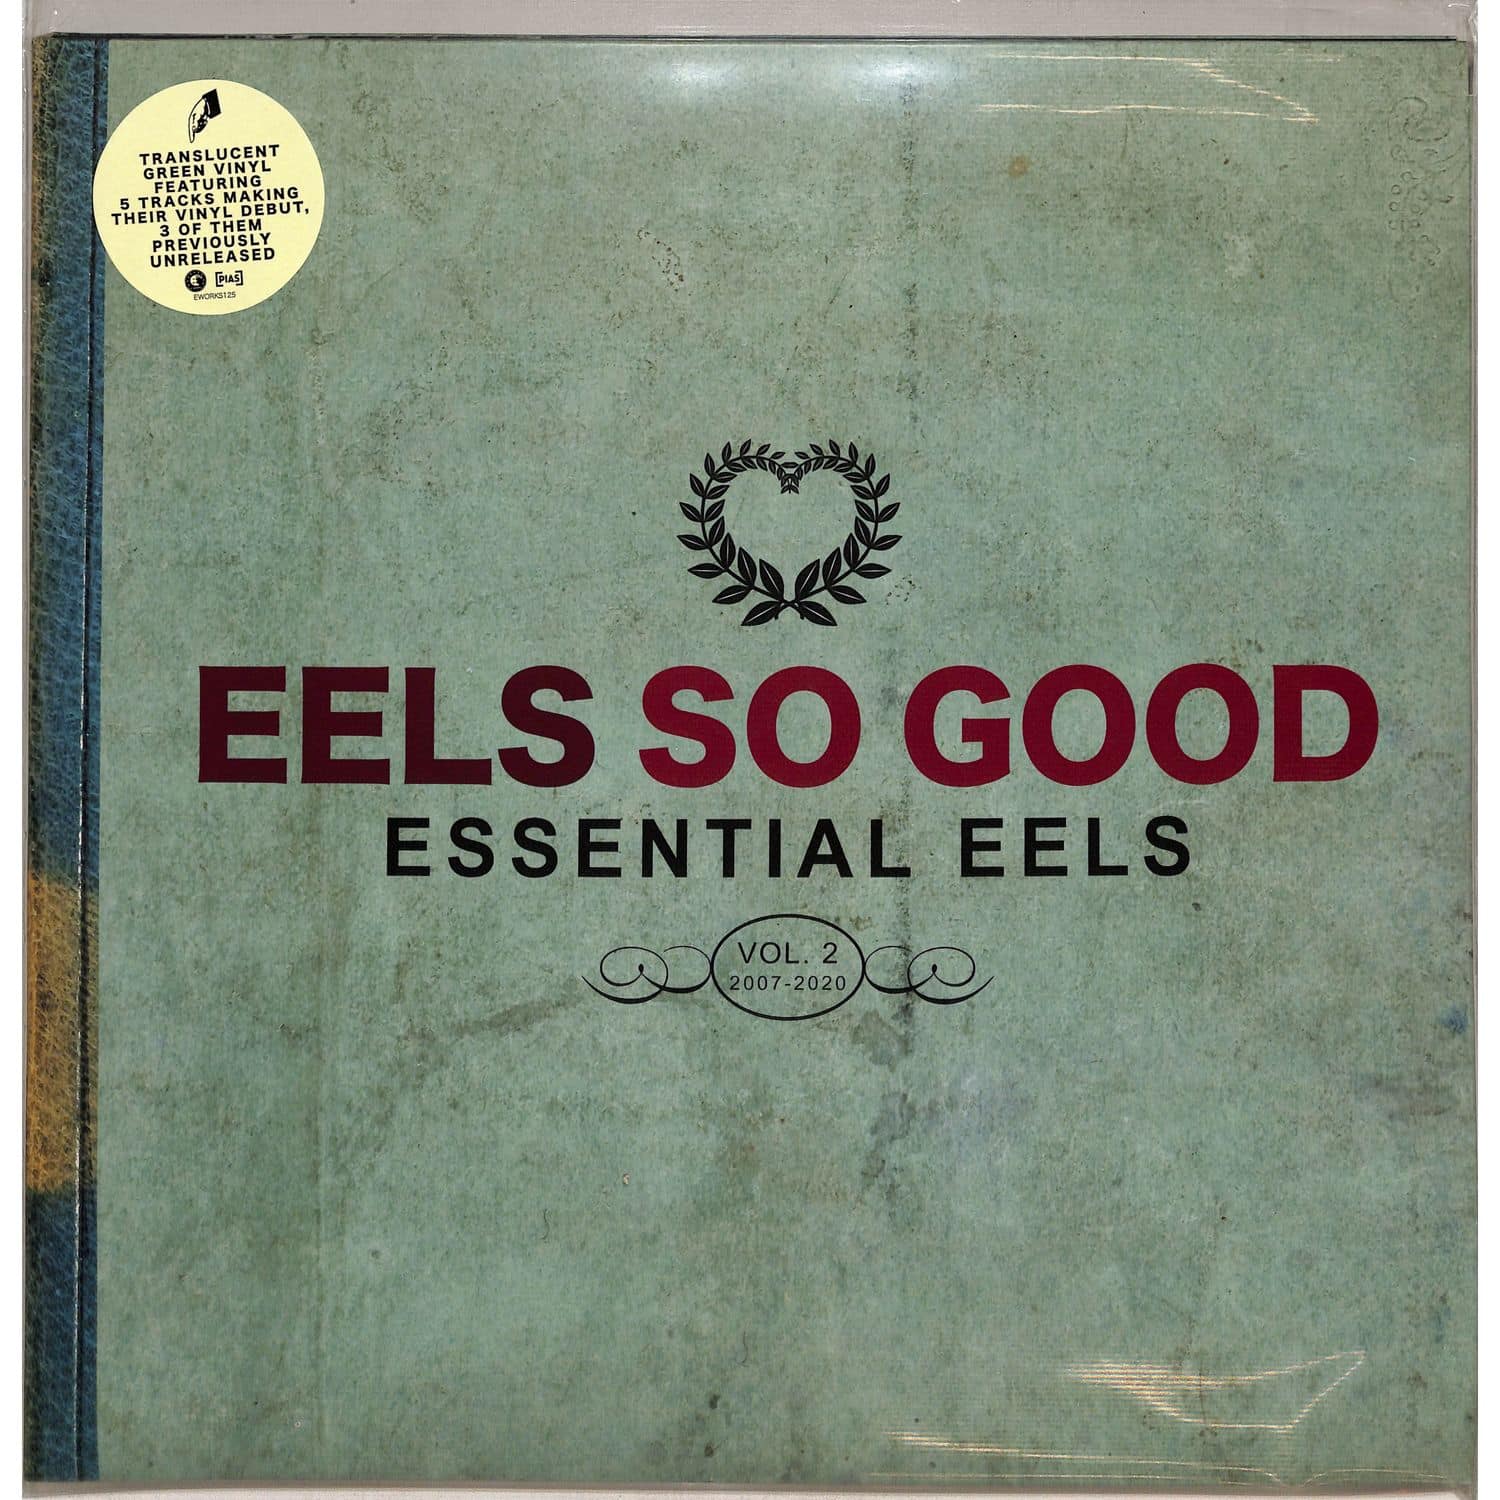 Eels - EELS SO GOOD: ESSENTIAL EELS VOL. 2 